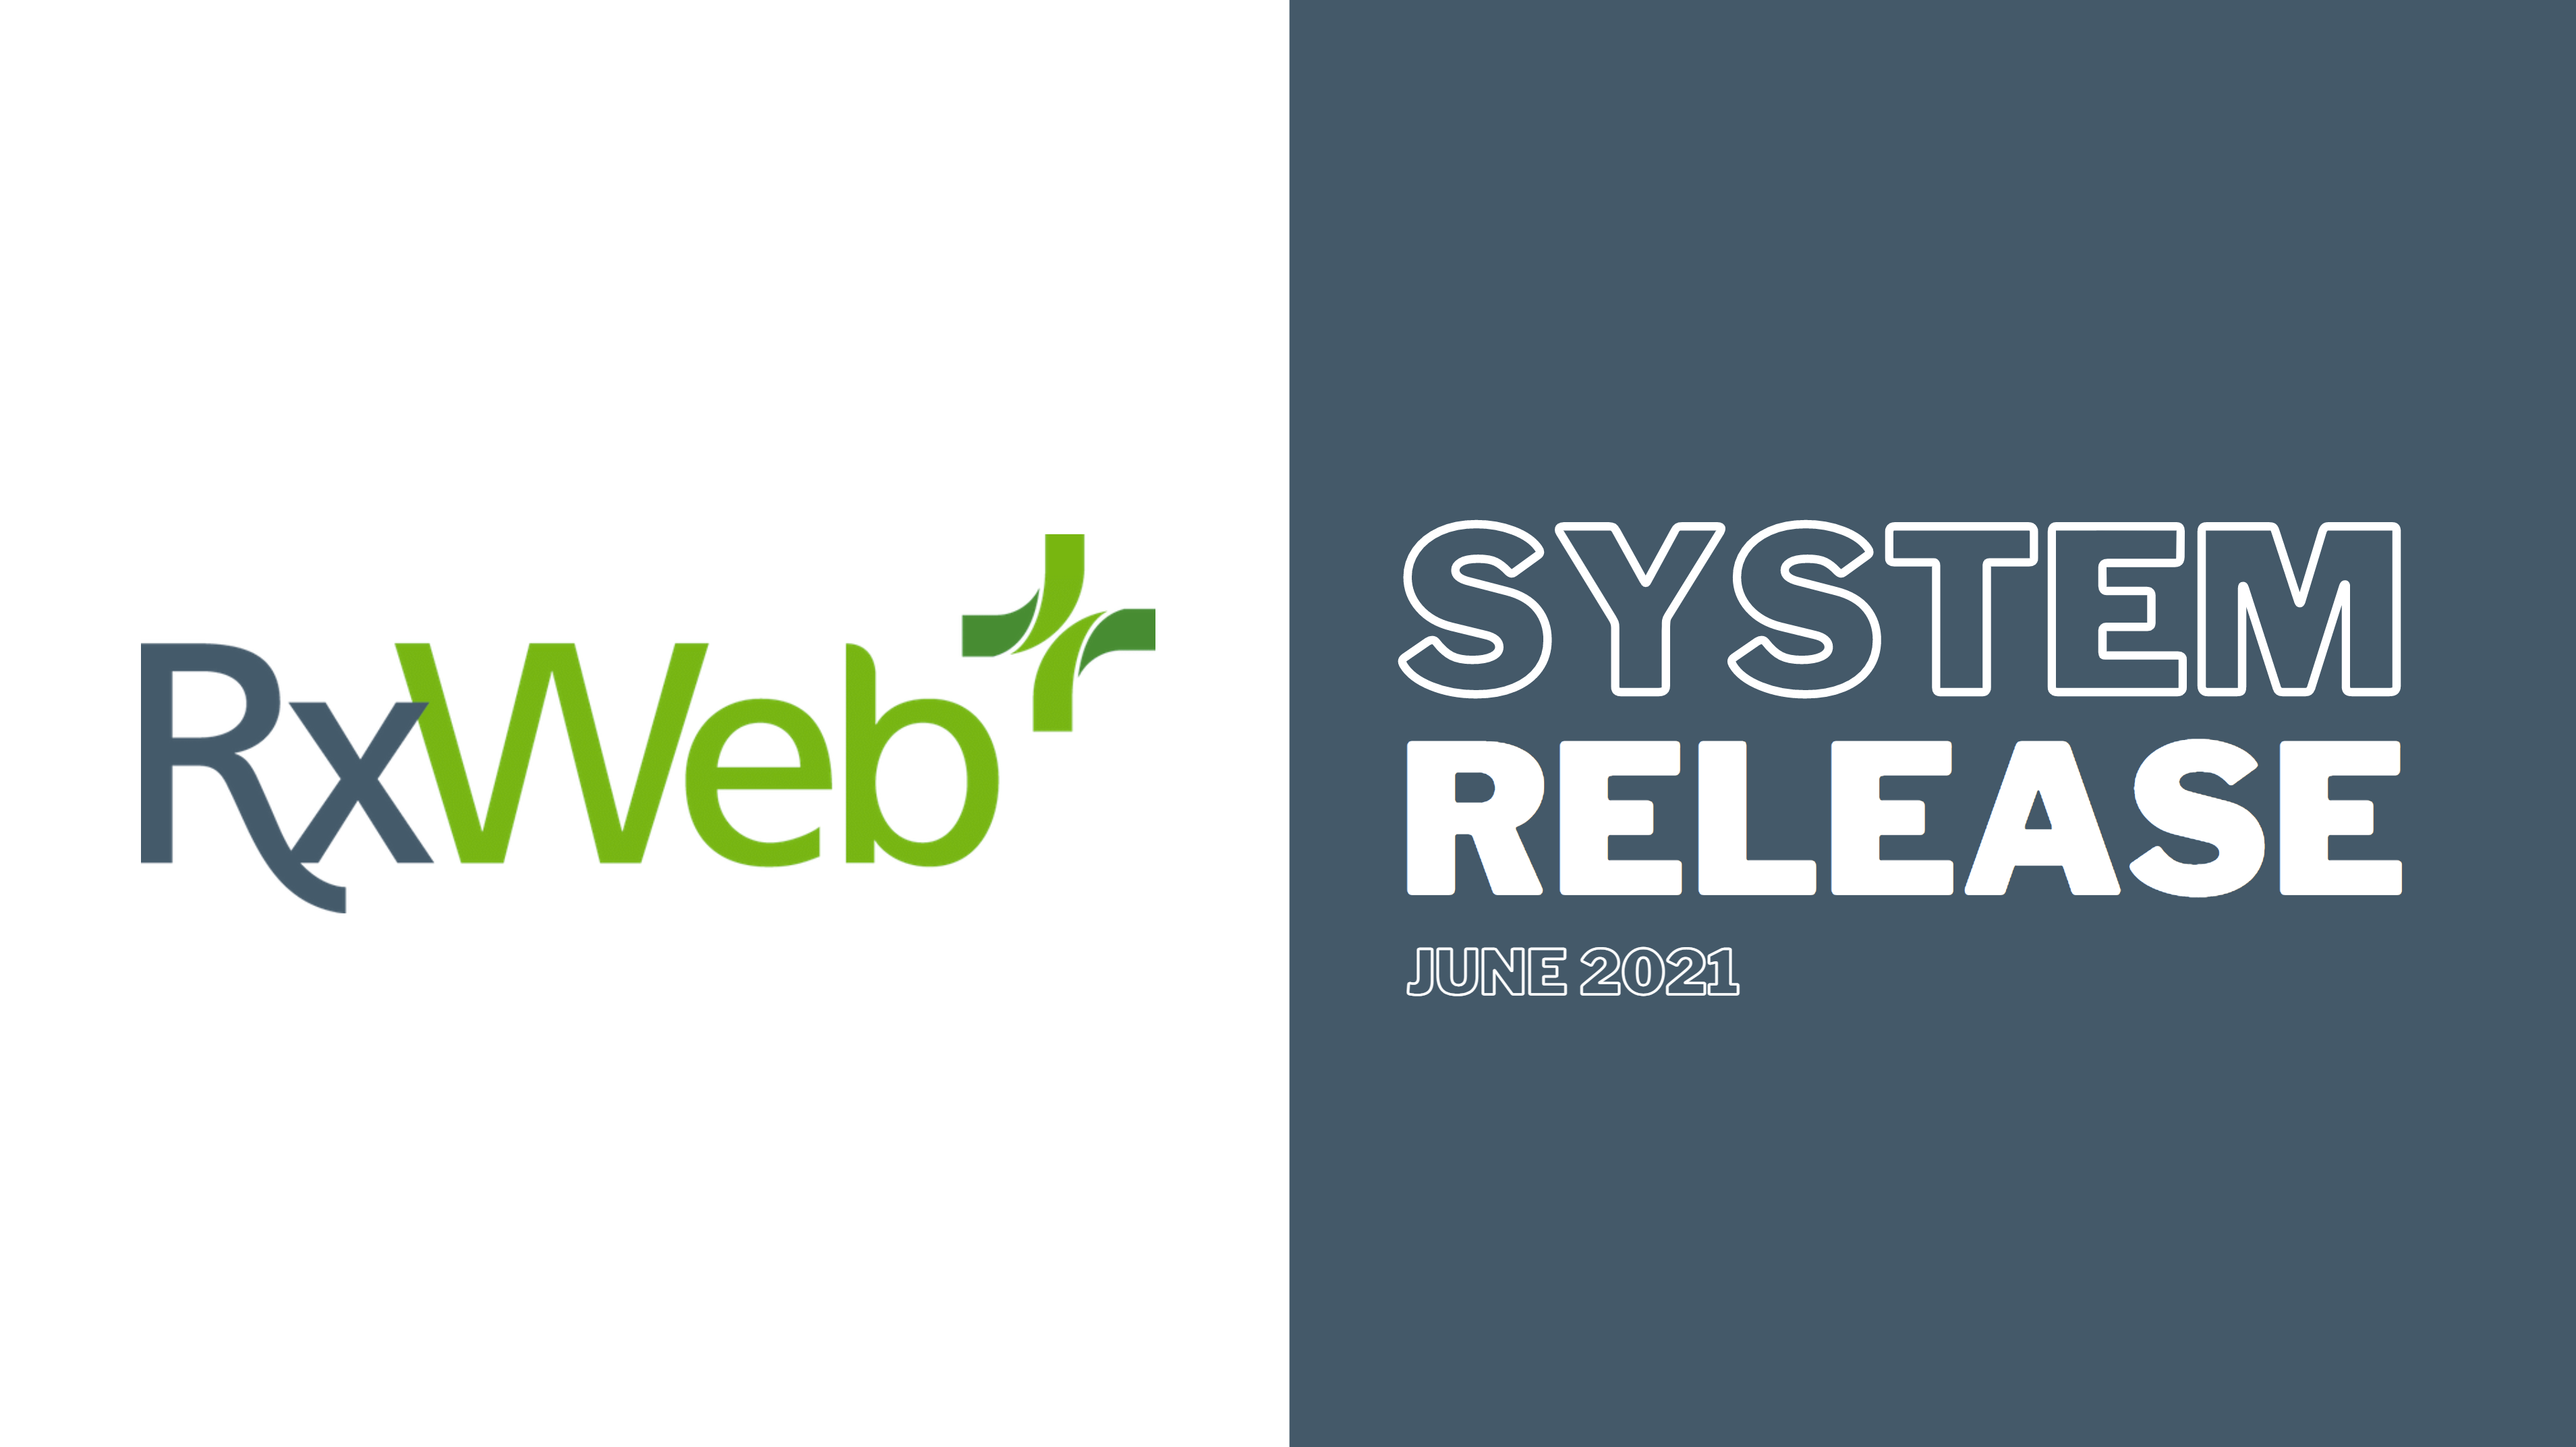 System Release – RTEC, SCR 1-click, Bag labels, EPS Queues